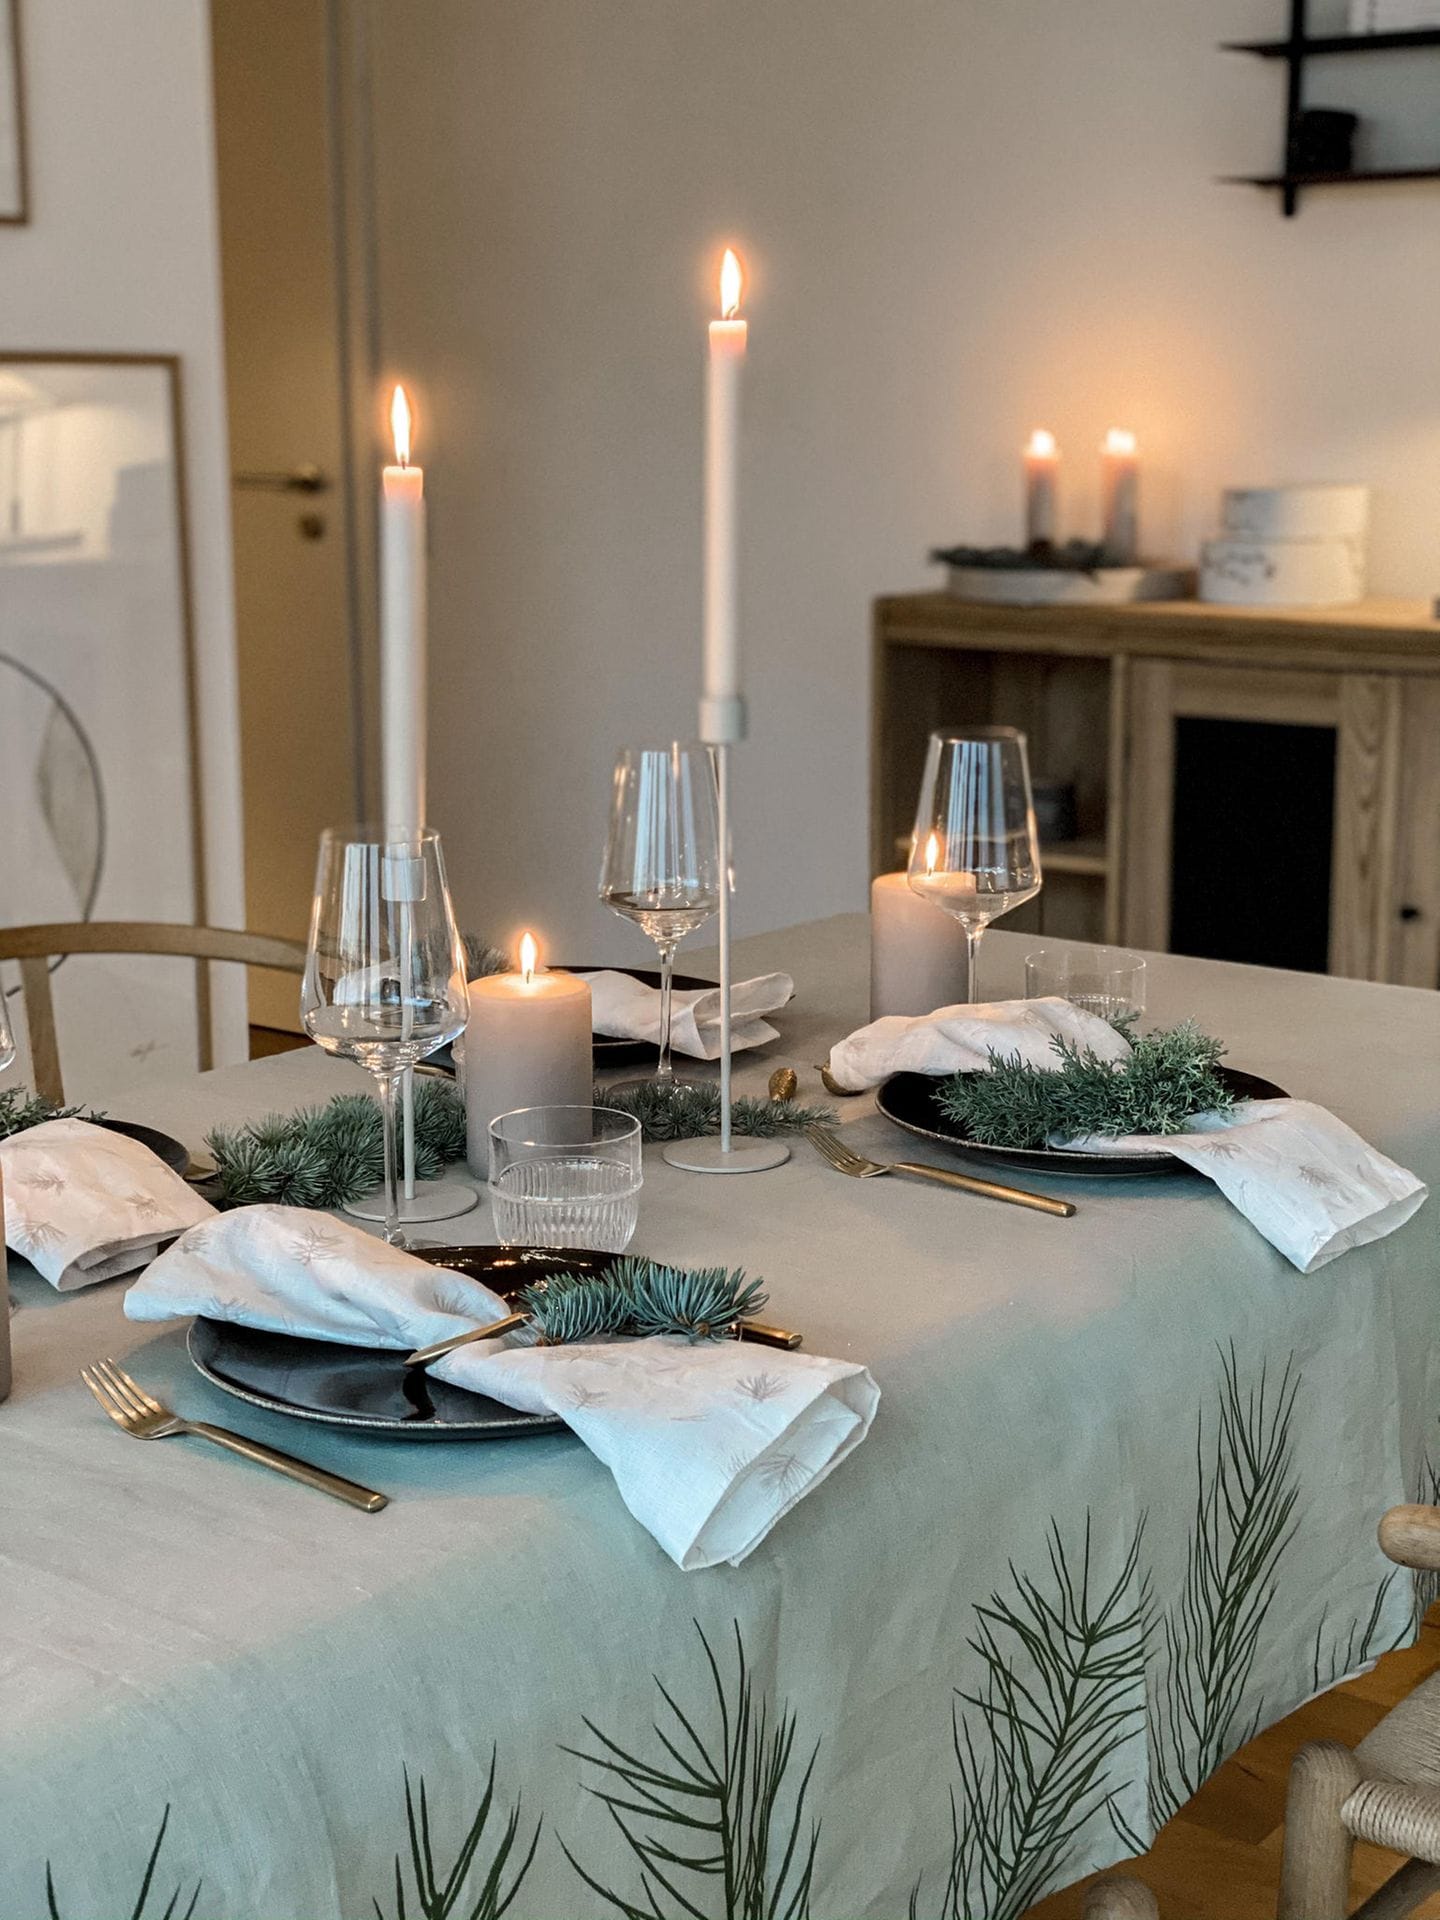 Tischdeko in grau mit grauer Musterdecke, dunkelblauen Tellern, goldenem Besteck und silbernen Kerzen